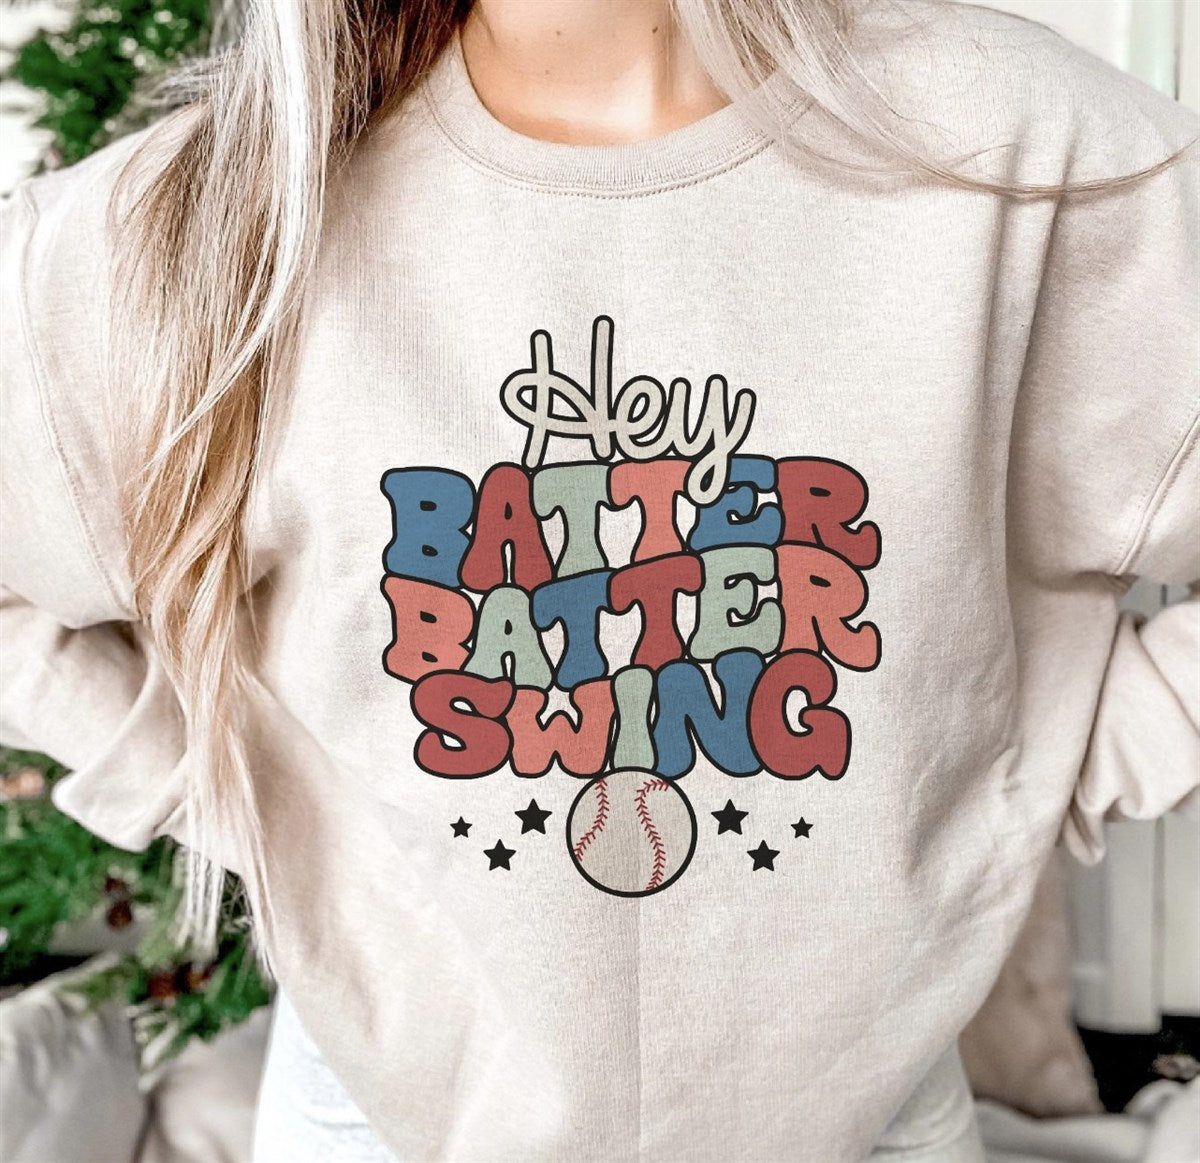 Hey Batter Batter Swing Crew Sweatshirt